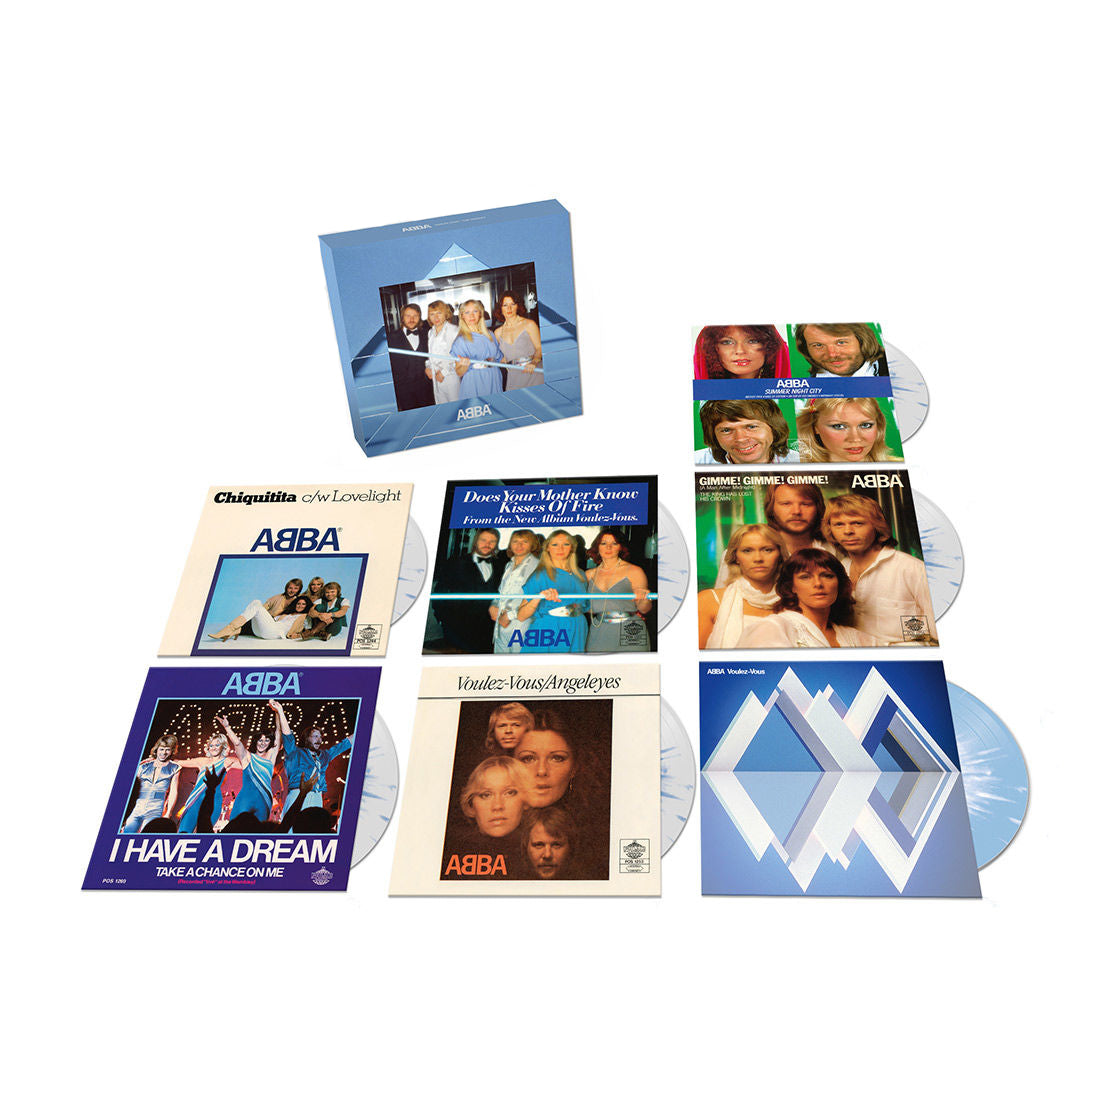 ABBA - Voulez Vous - The Singles: Limited Colour Vinyl 7" Box Set